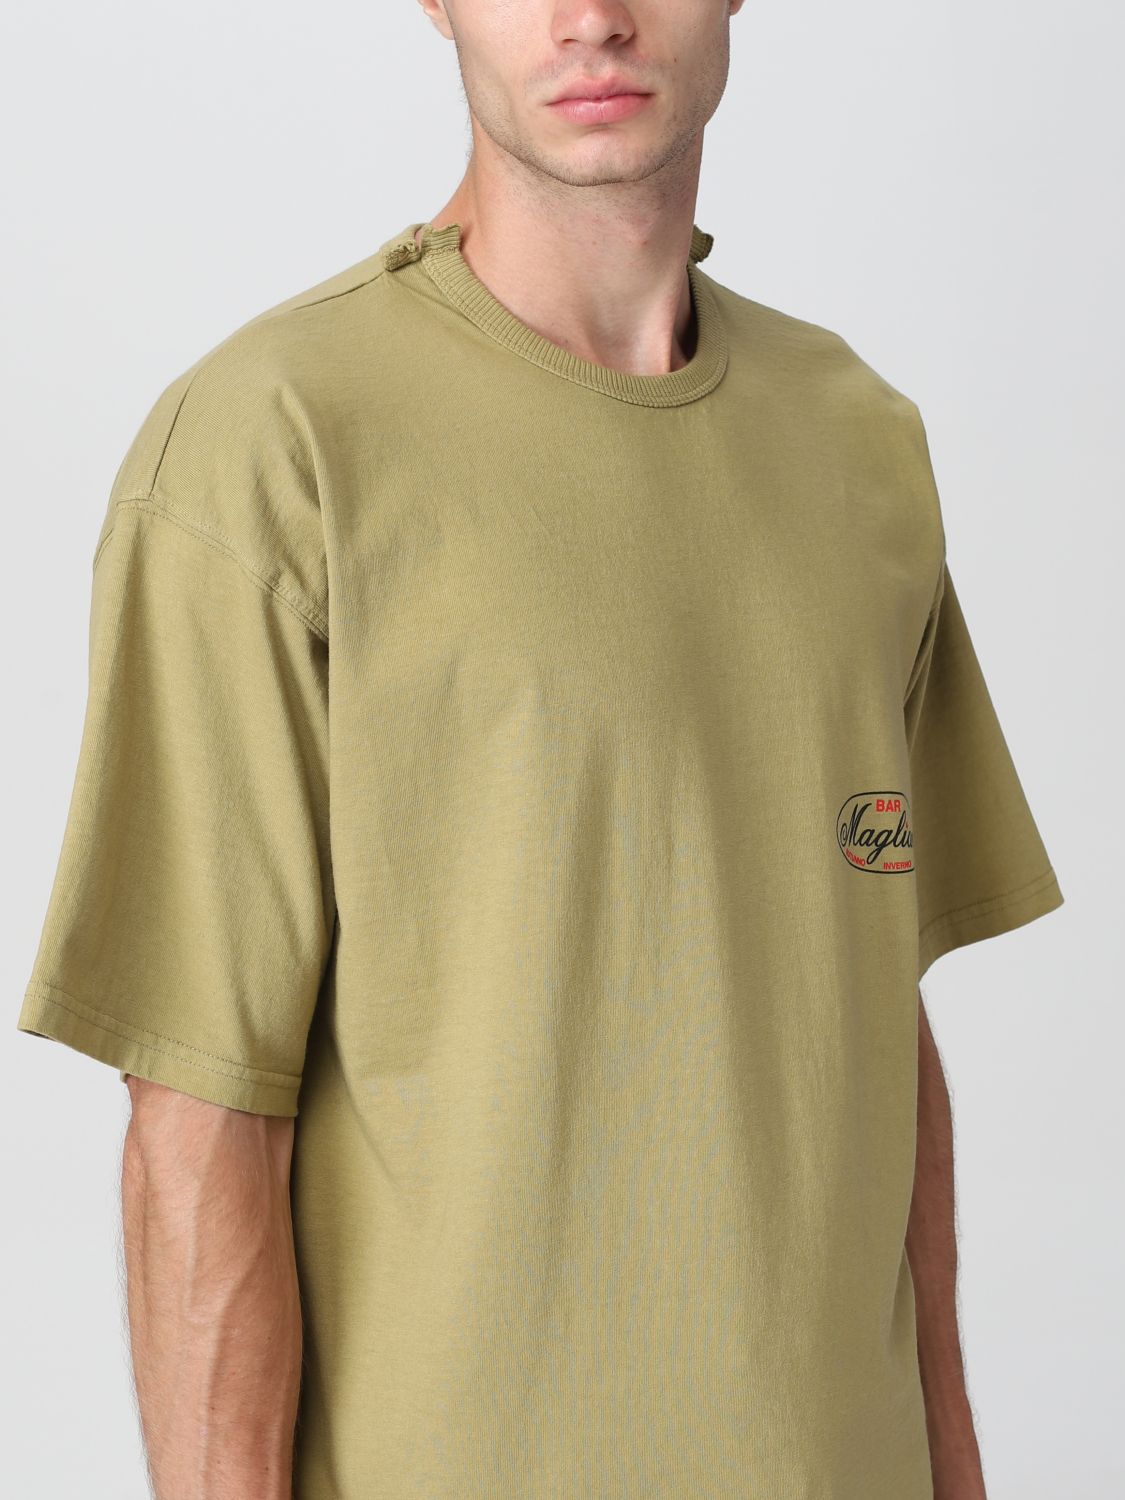 magliano Tシャツ - Tシャツ/カットソー(半袖/袖なし)